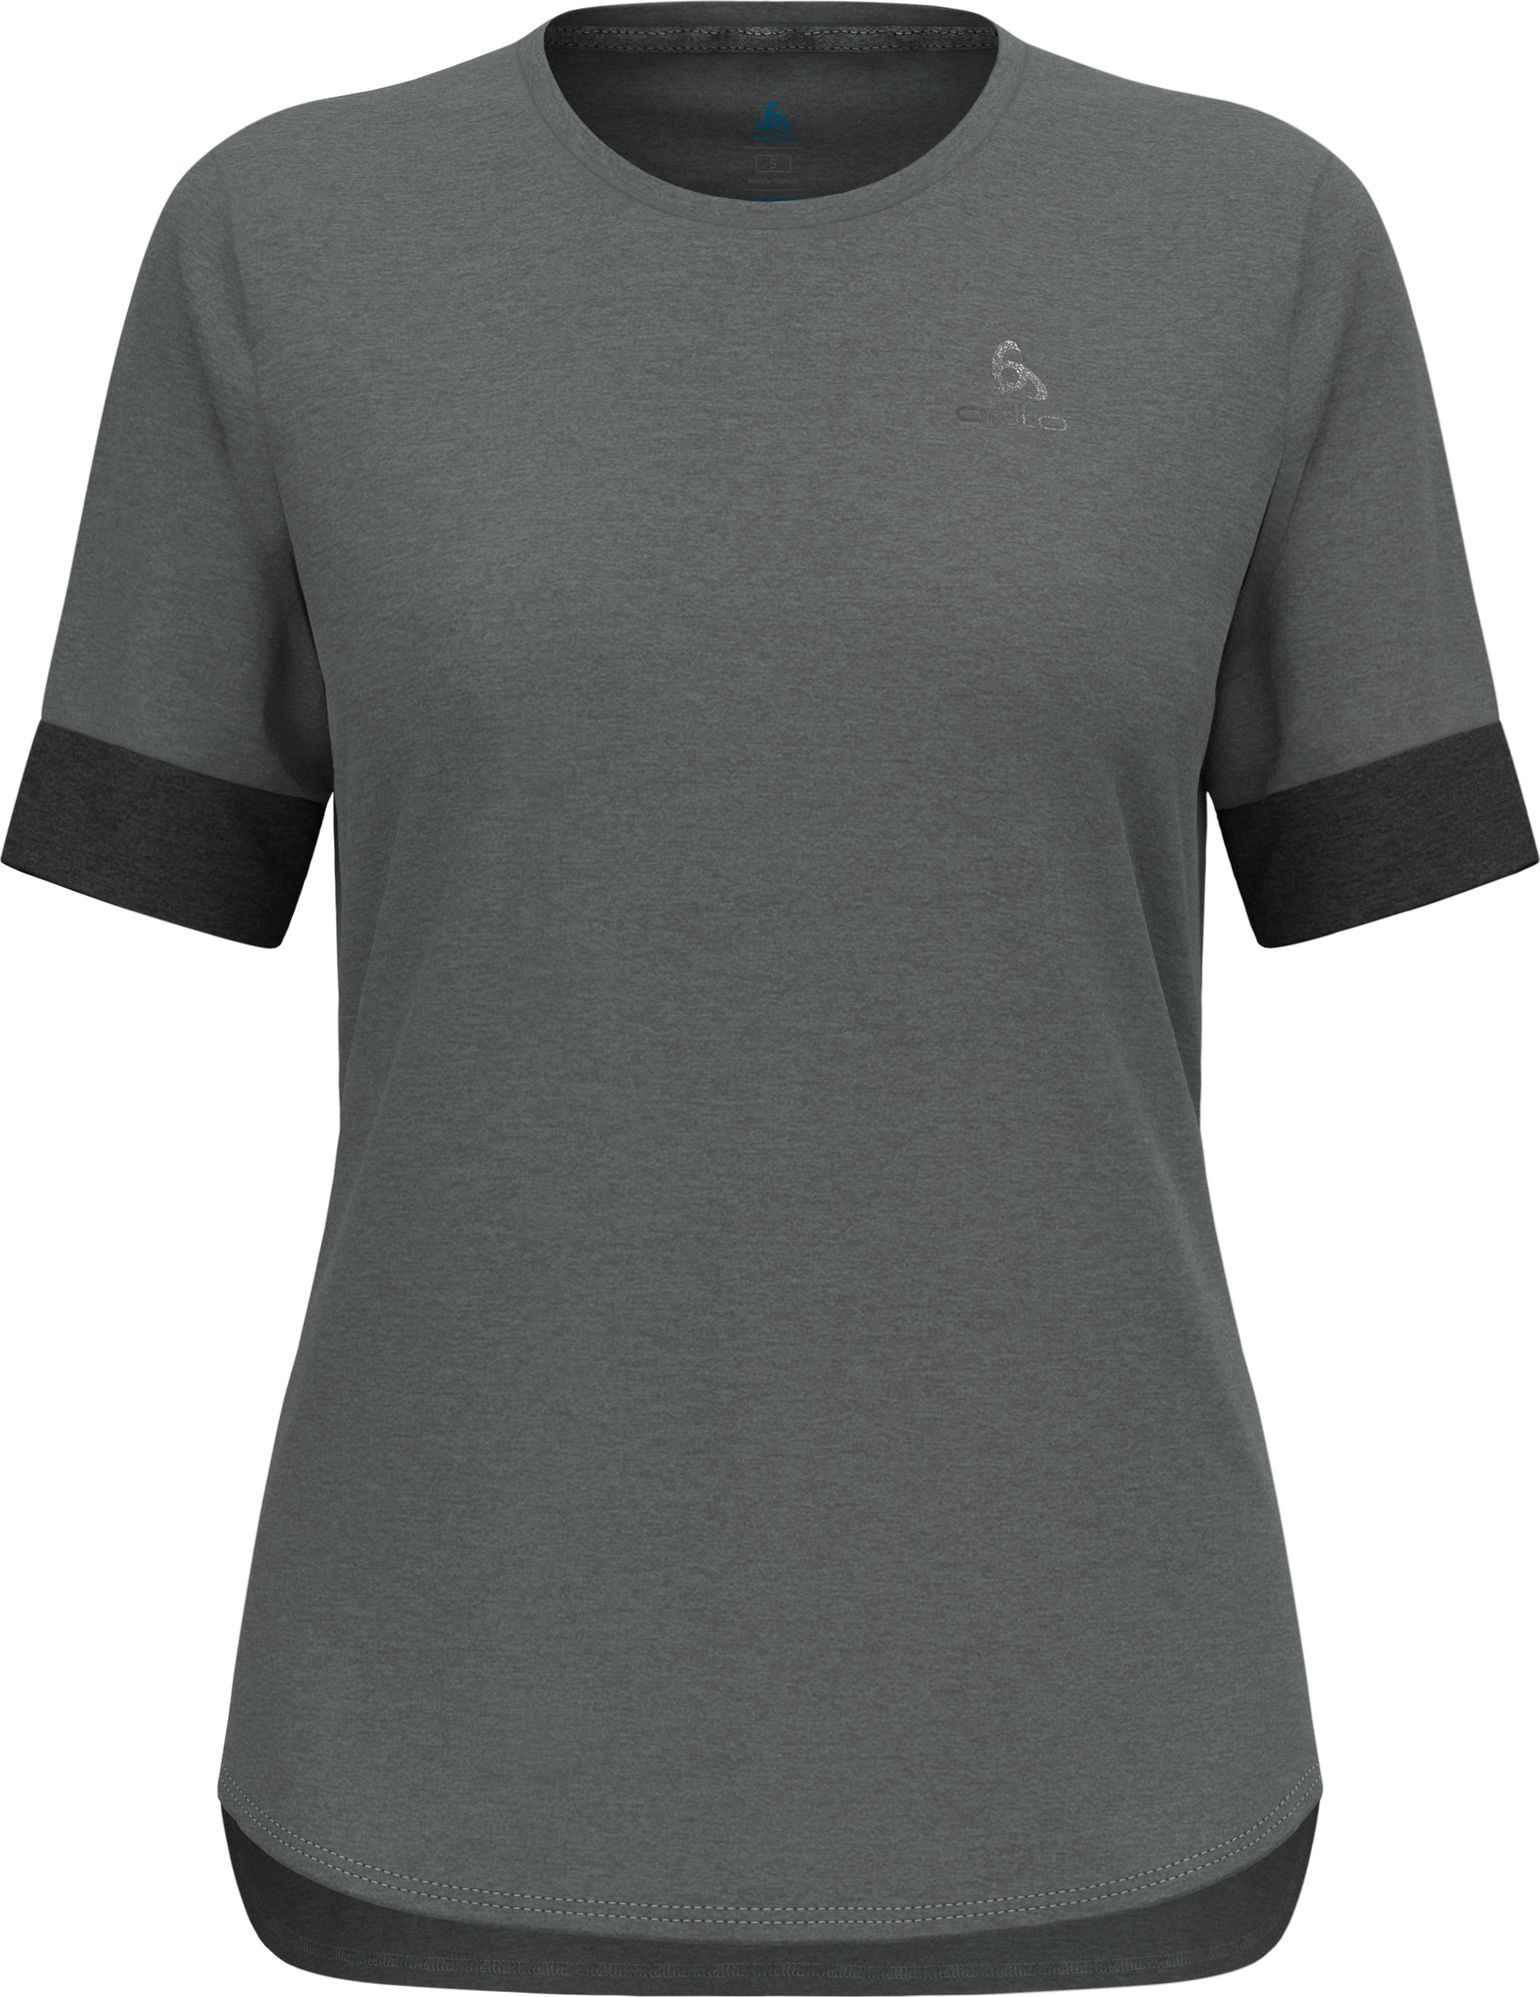 Odlo Women's T-shirt Crew Neck S/S Ride 365 Black Melange/Grey Melange